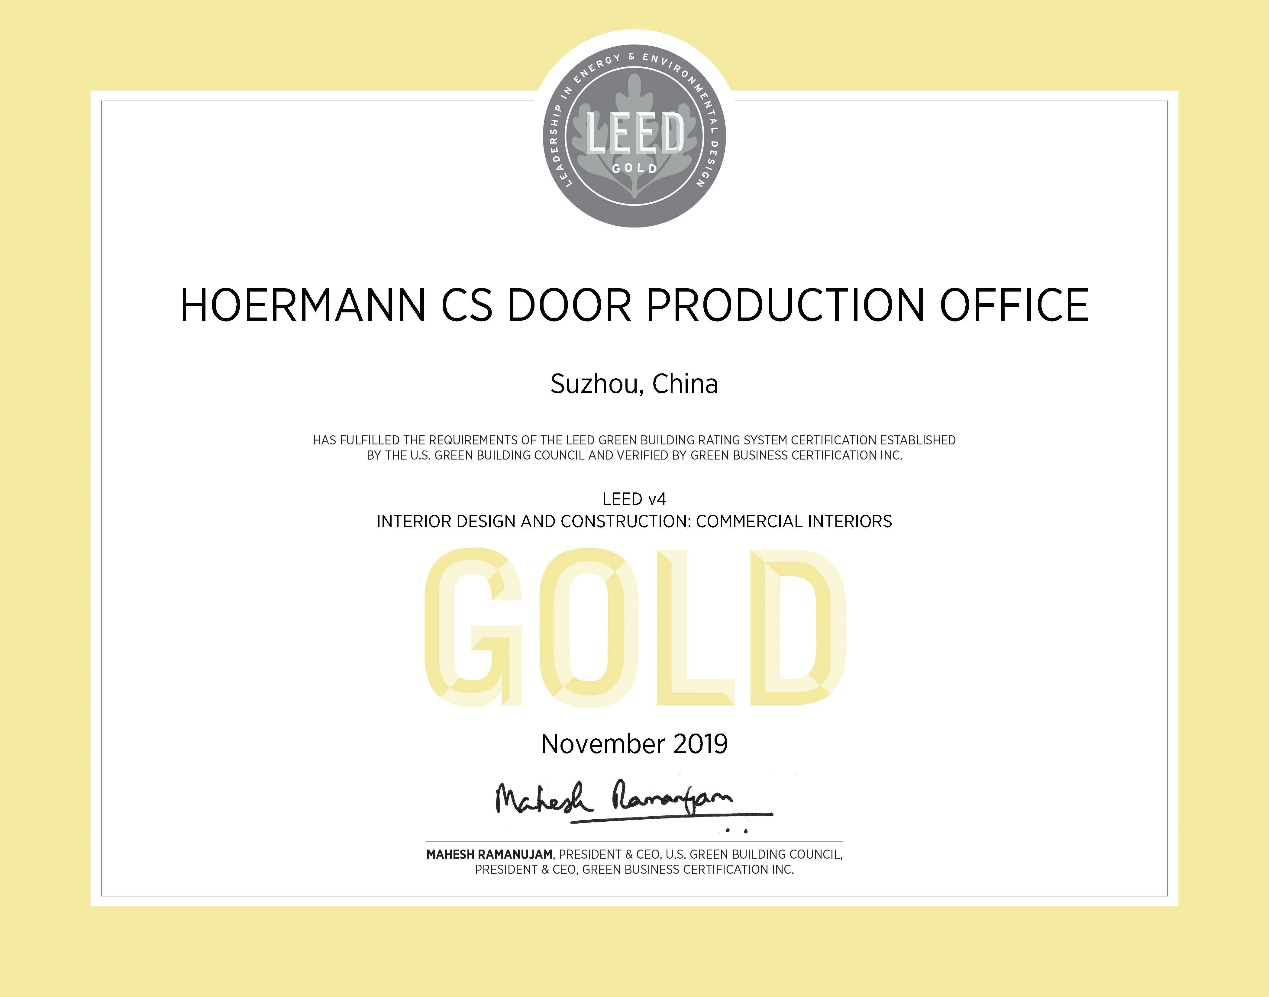 LEED-Zertifizierung für Hoermann CS Door Productio...